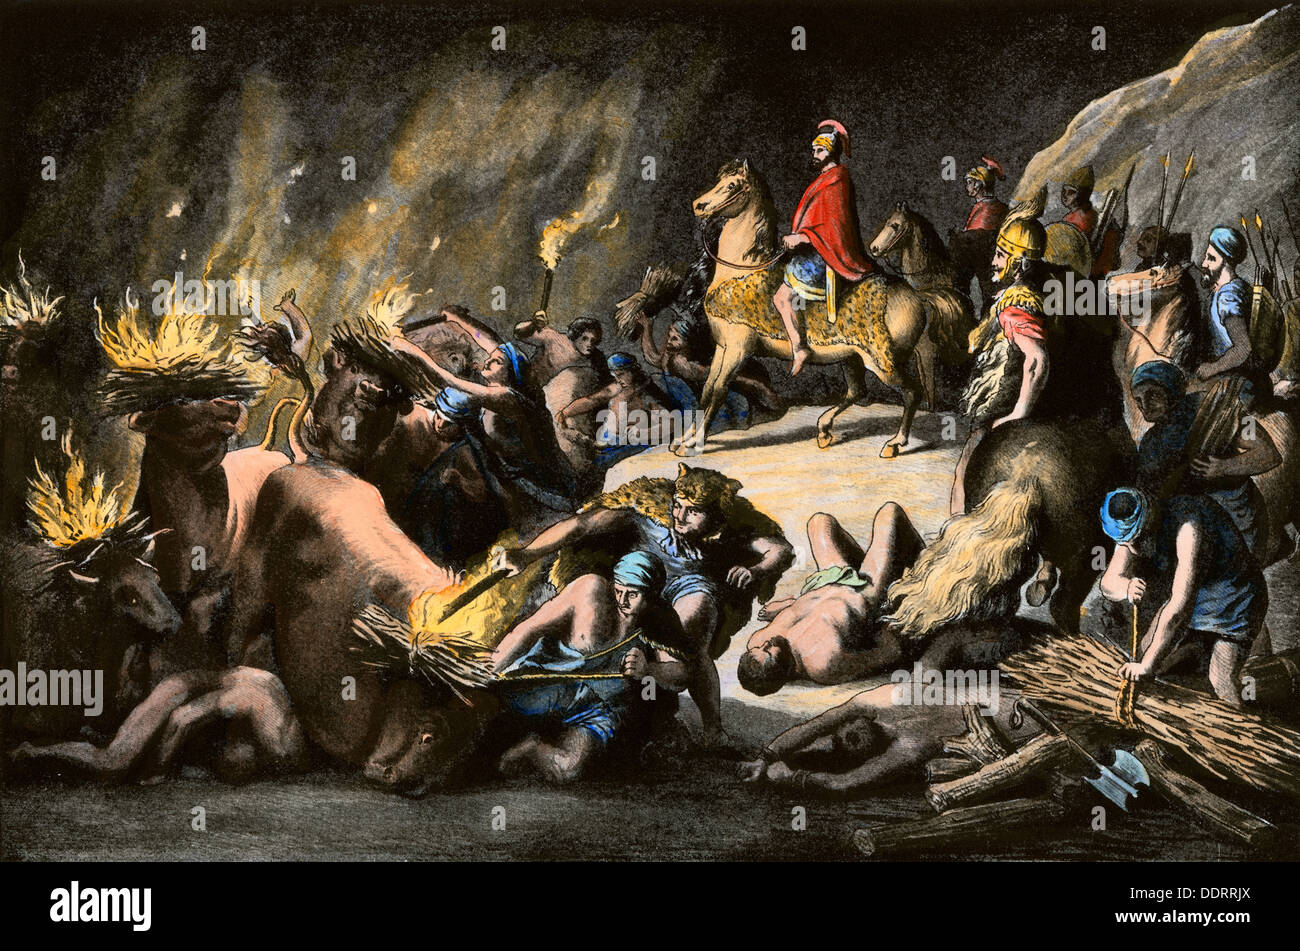 Hannibals strategem der Zerstörung in Kampanien während der Punischen Kriege gegen Rom. Handcolorierte halftone Reproduktion eines Abbildung Stockfoto